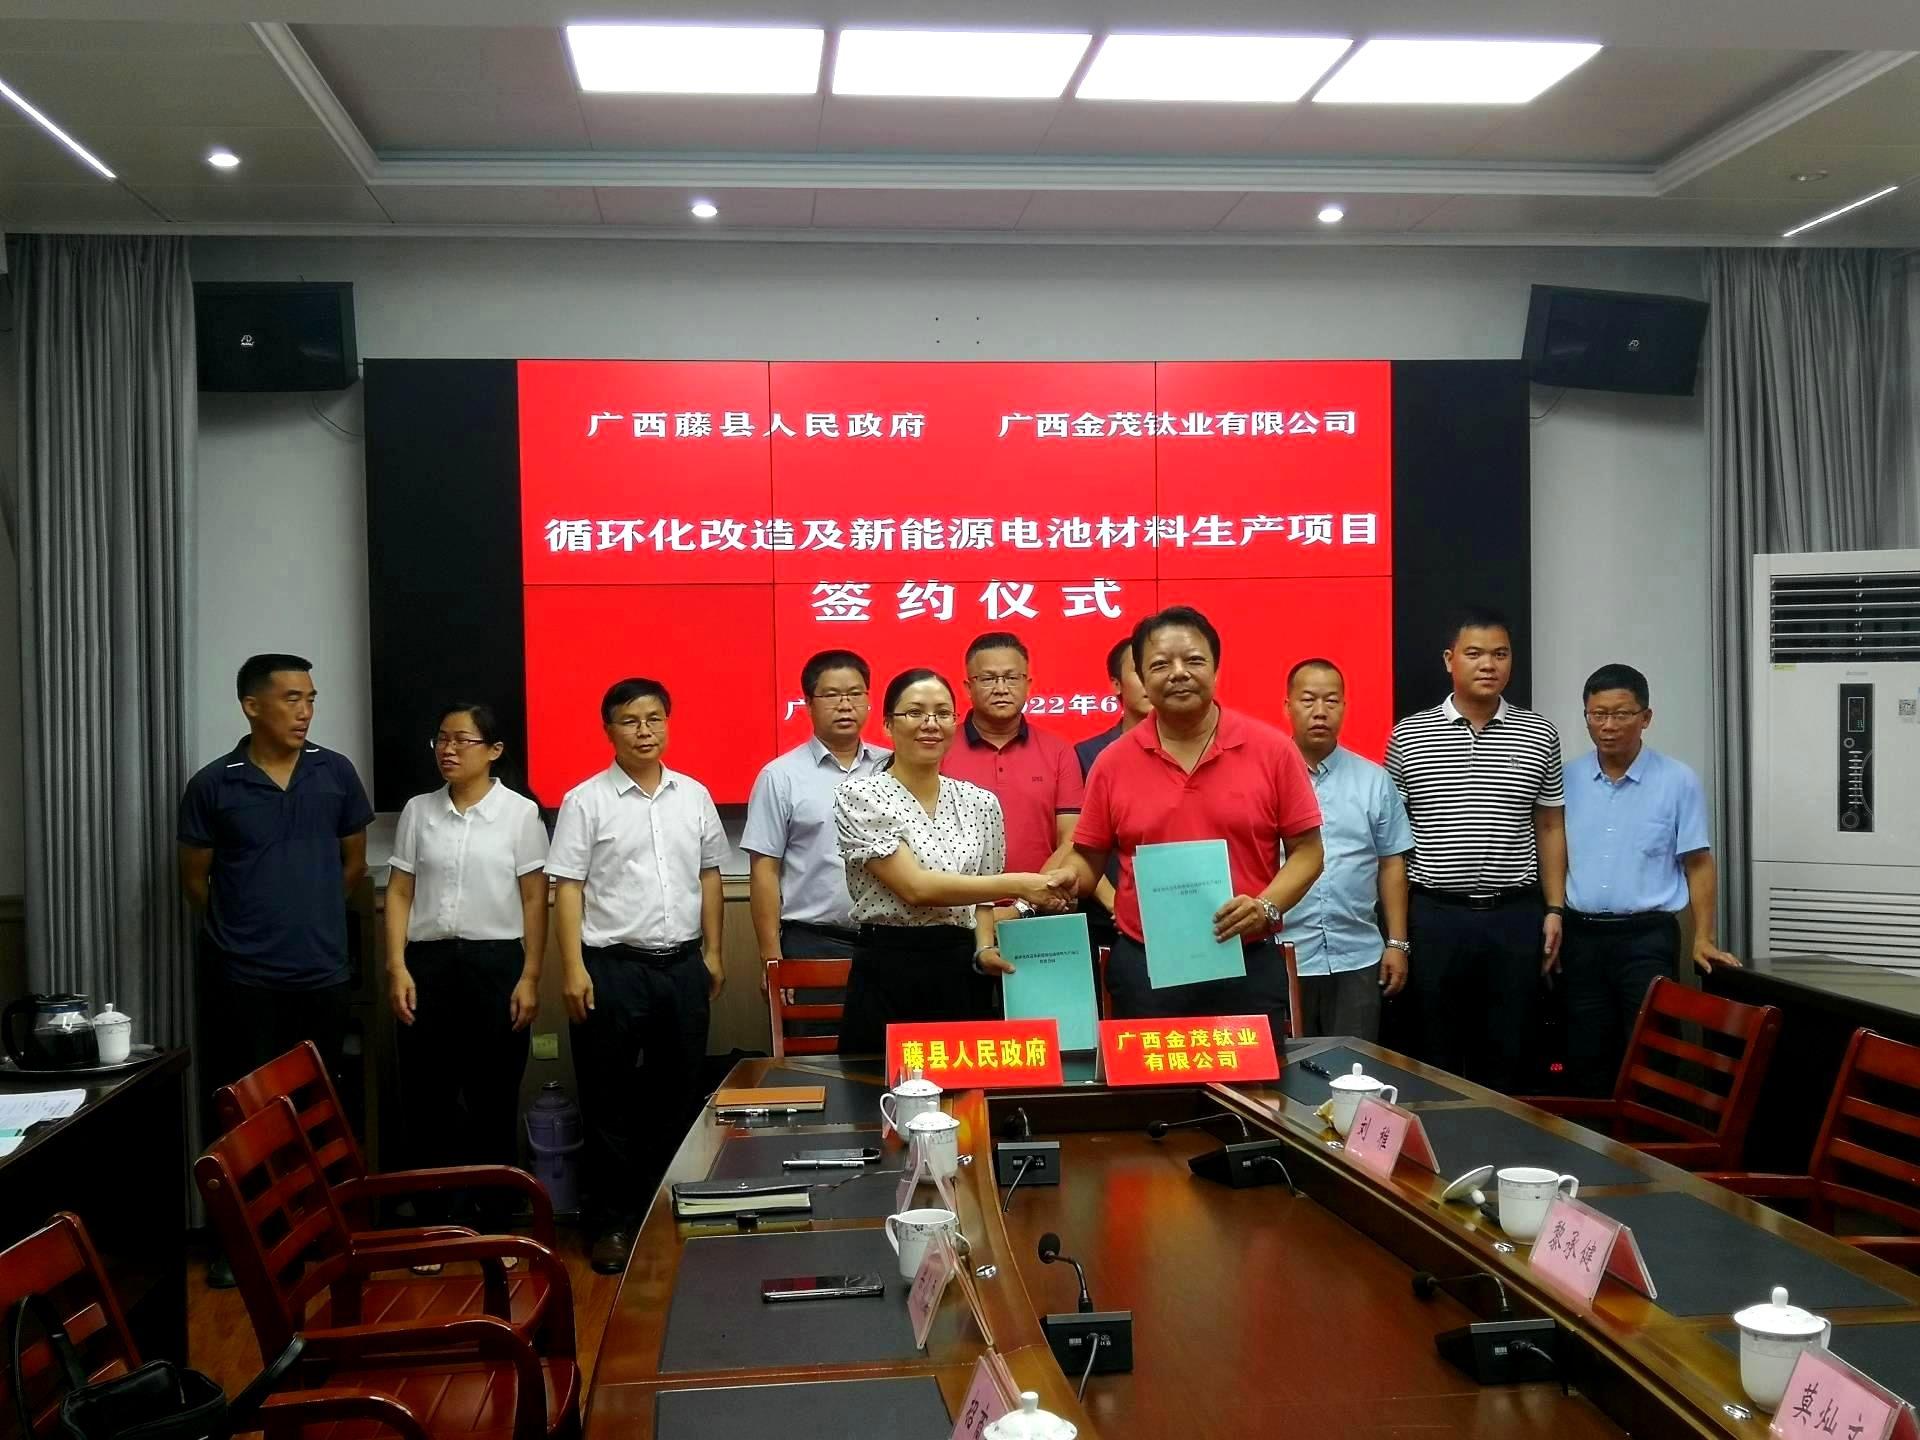 广西银河国际钛业有限公司 与地方政府签约建设10万吨磷酸铁项目生产线